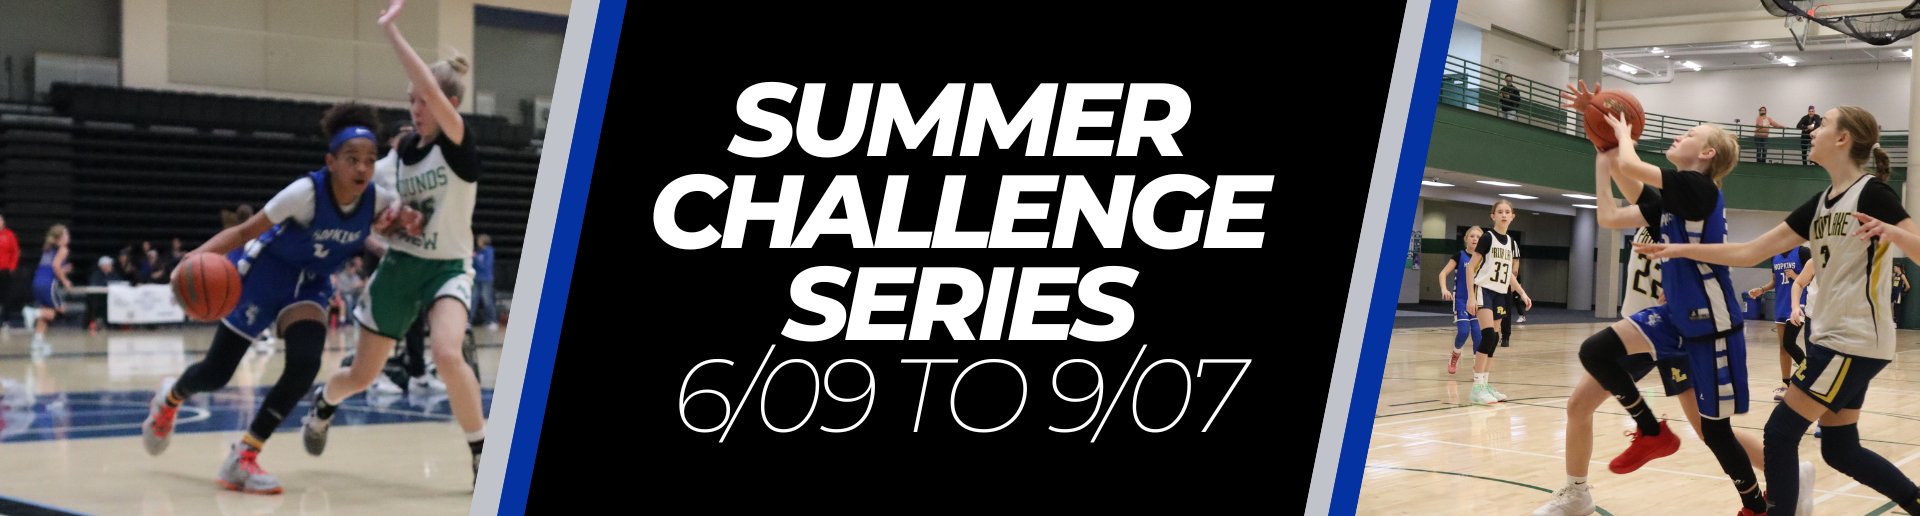 Summer Challenge Series